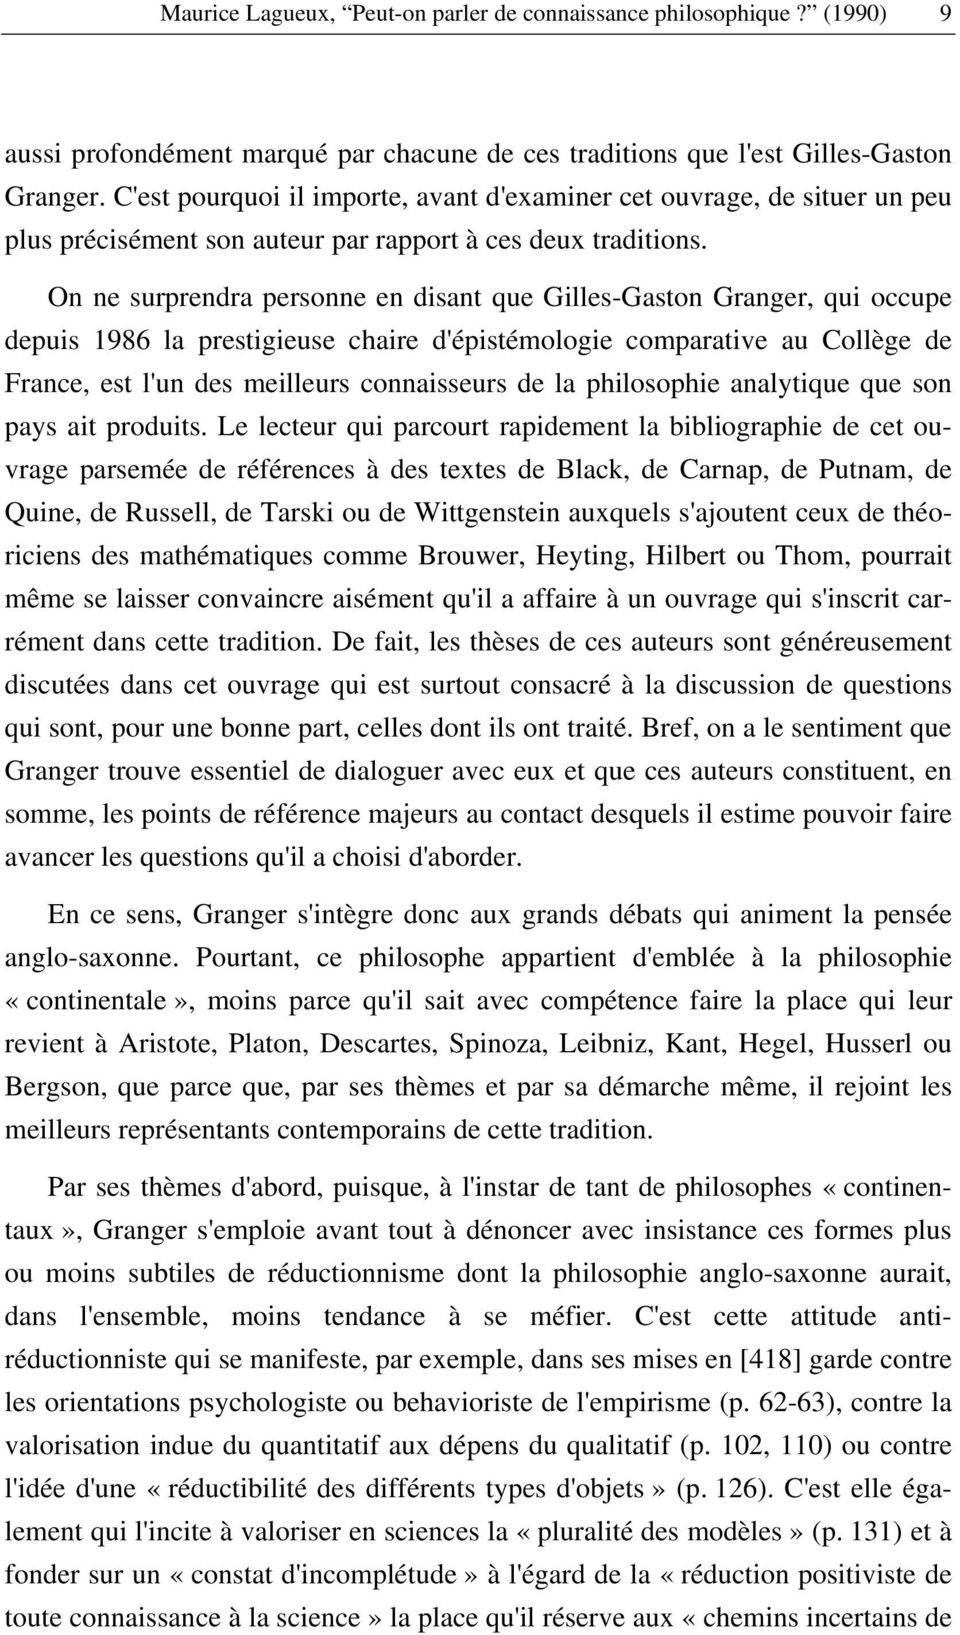 On ne surprendra personne en disant que Gilles-Gaston Granger, qui occupe depuis 1986 la prestigieuse chaire d'épistémologie comparative au Collège de France, est l'un des meilleurs connaisseurs de